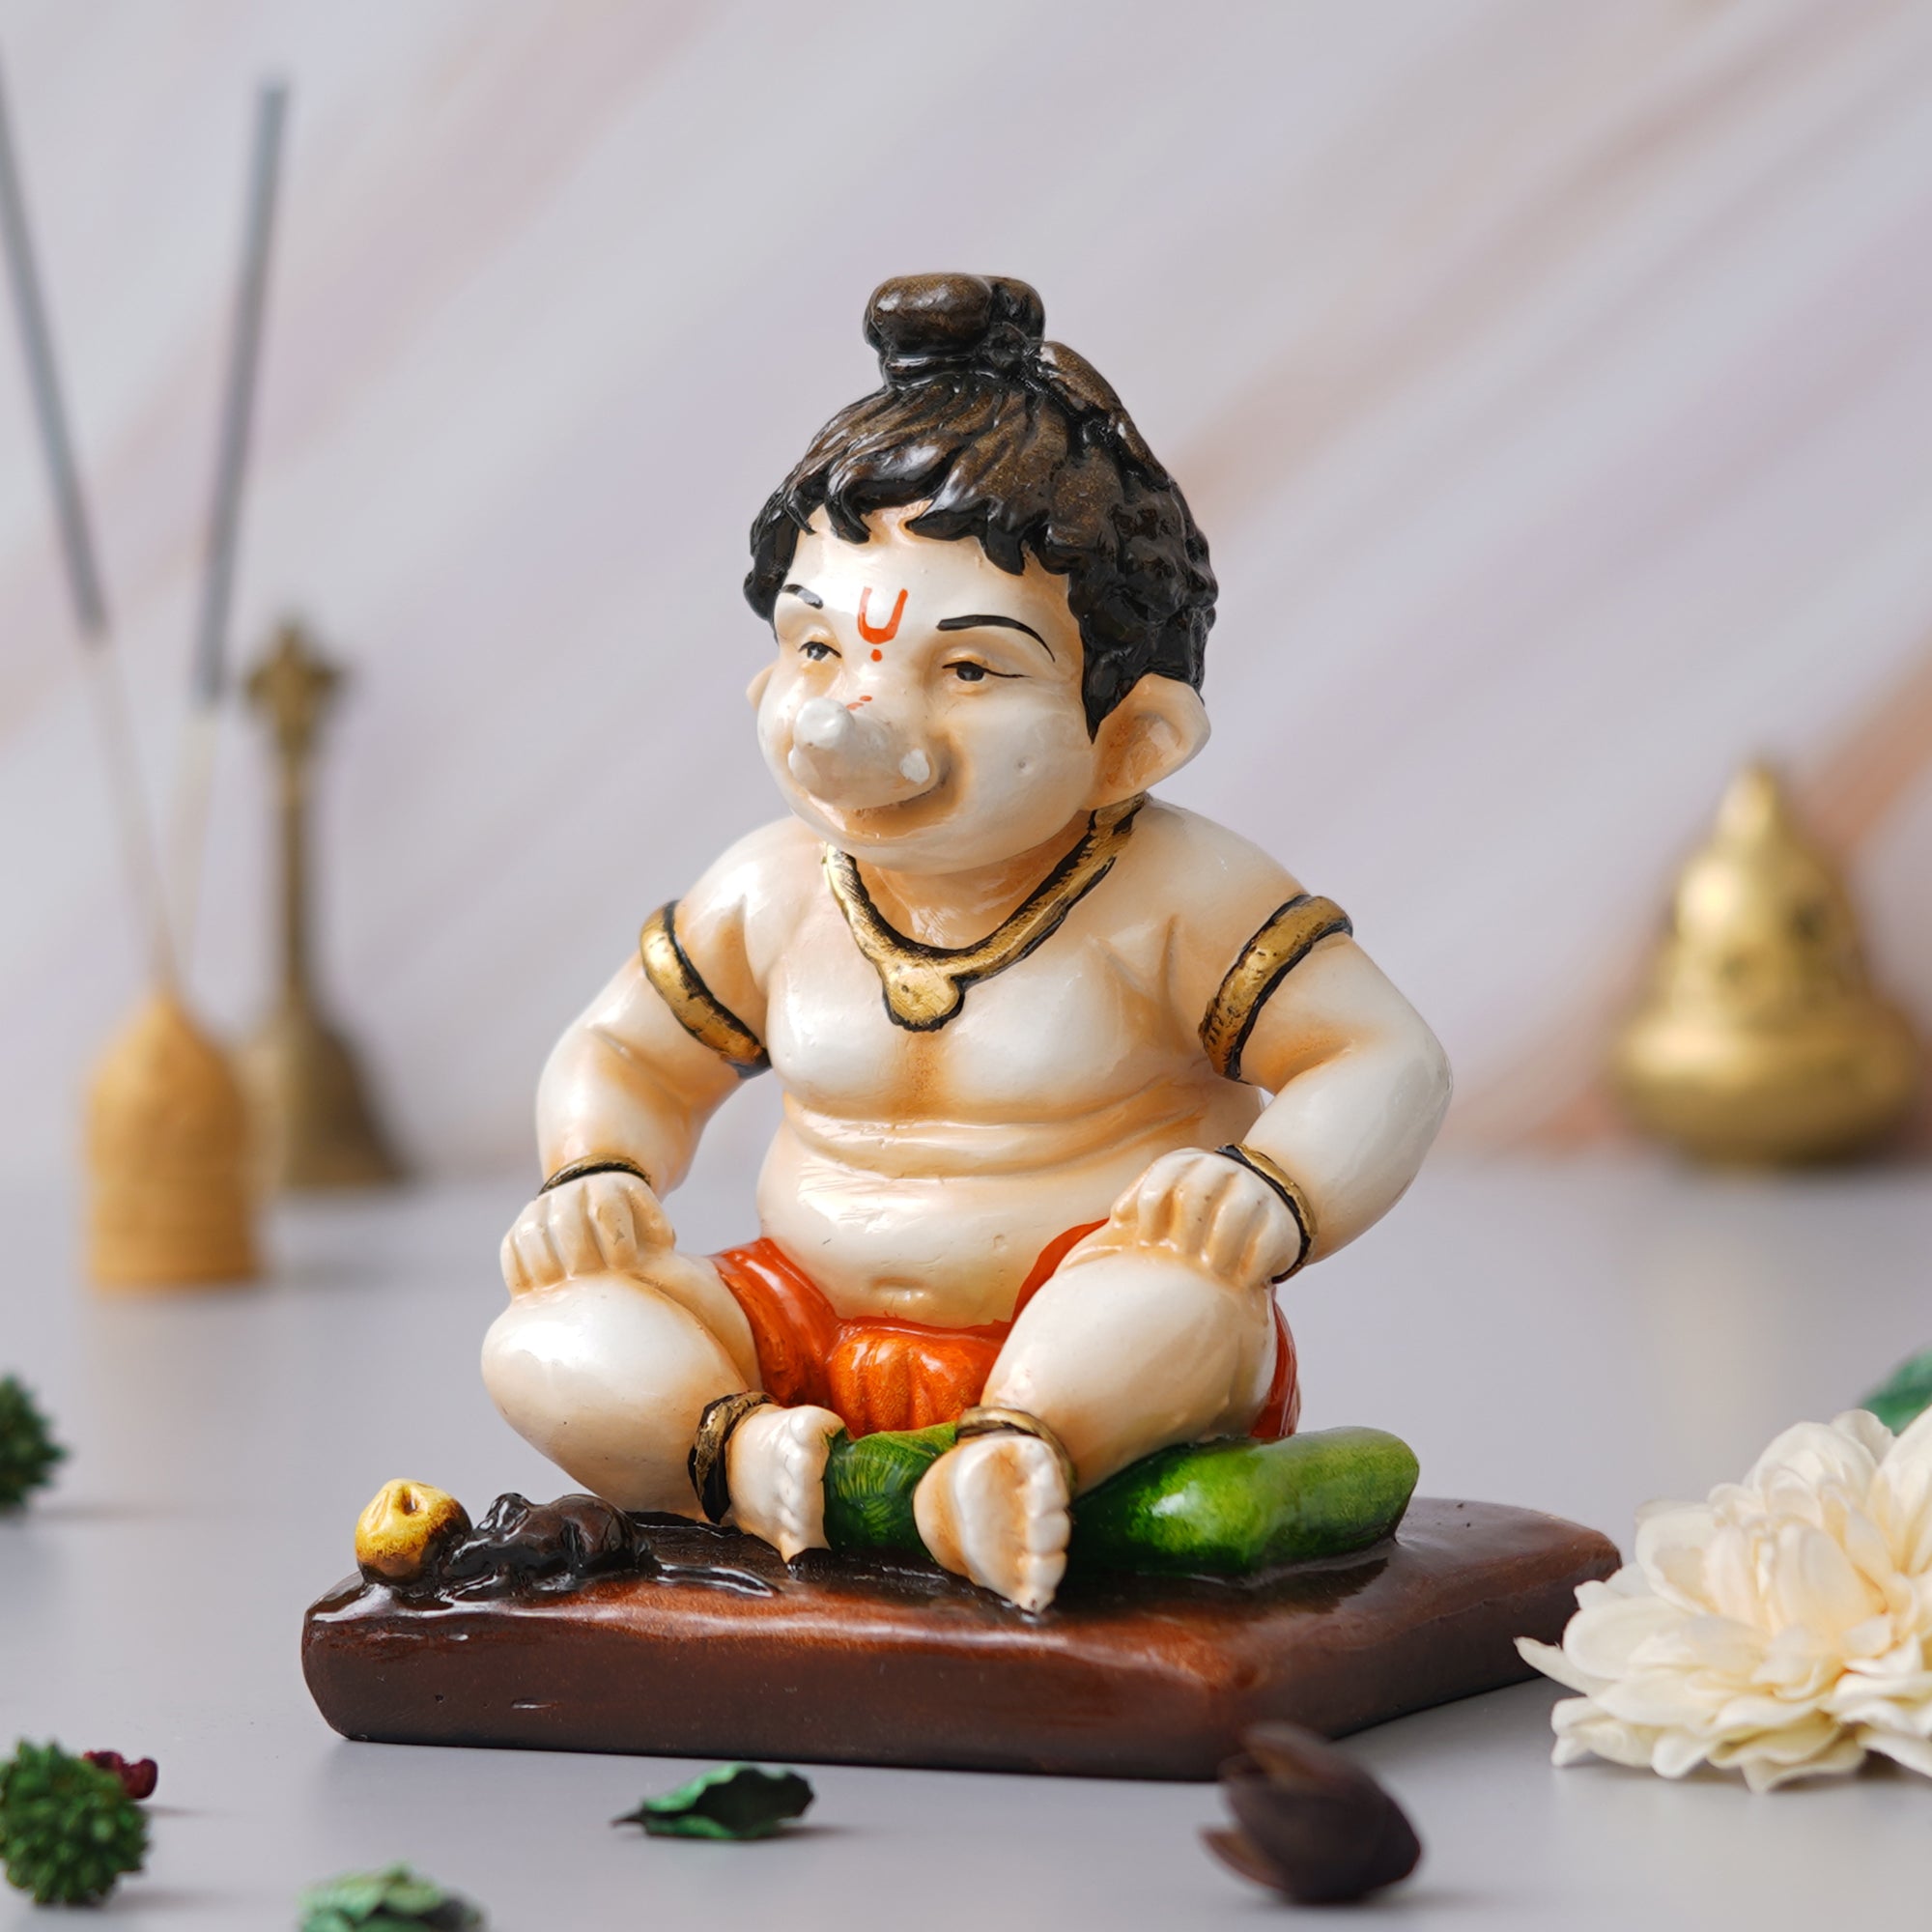 eCraftIndia Multicolor Polyresin Handcrafted Sitting Lord Ganesha Idol 5